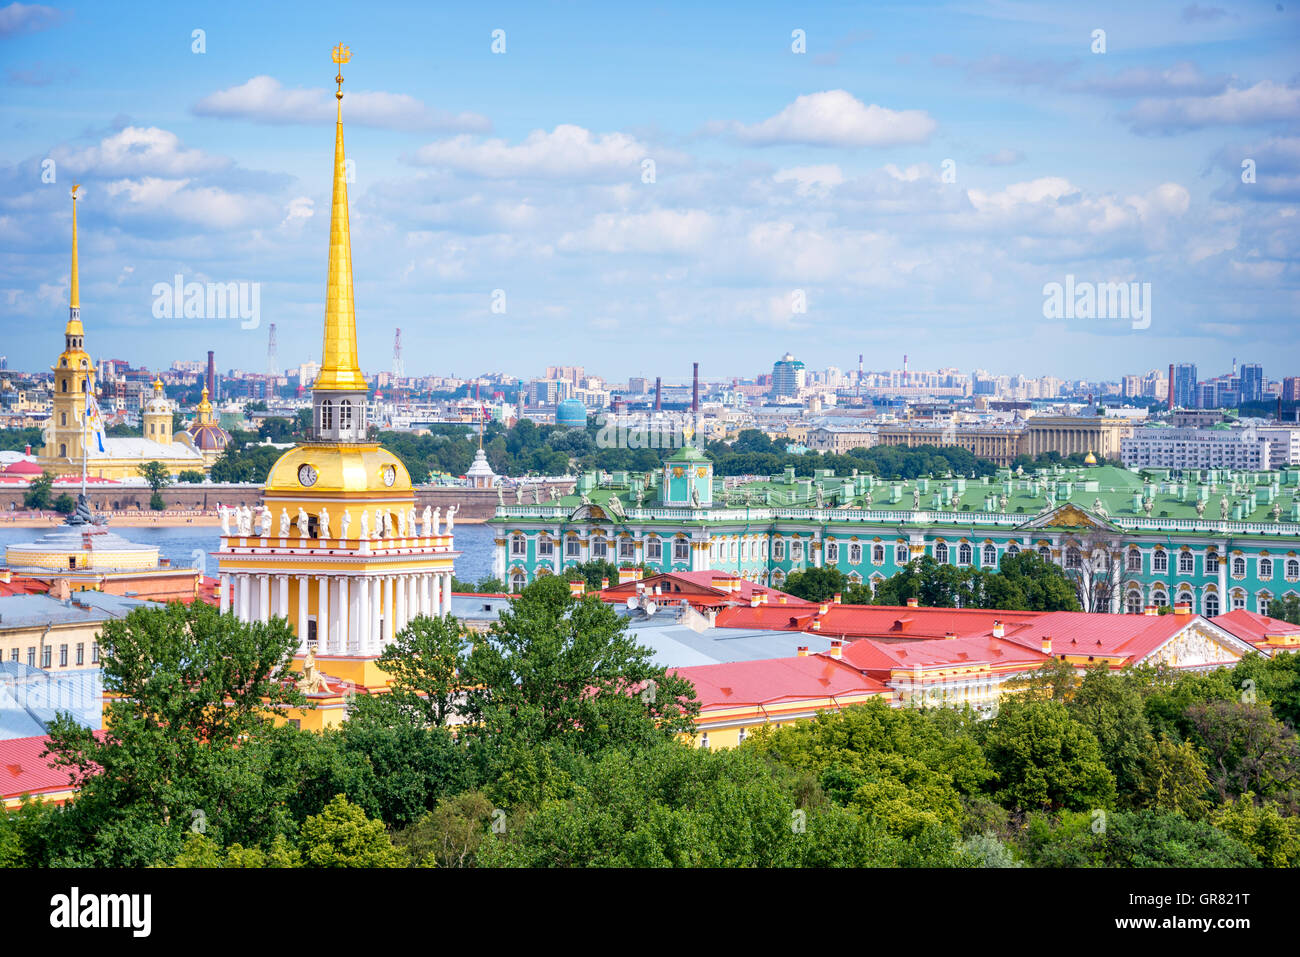 Vue aérienne de la tour de l'amirauté et l'Ermitage, Saint-Pétersbourg, Russie Banque D'Images